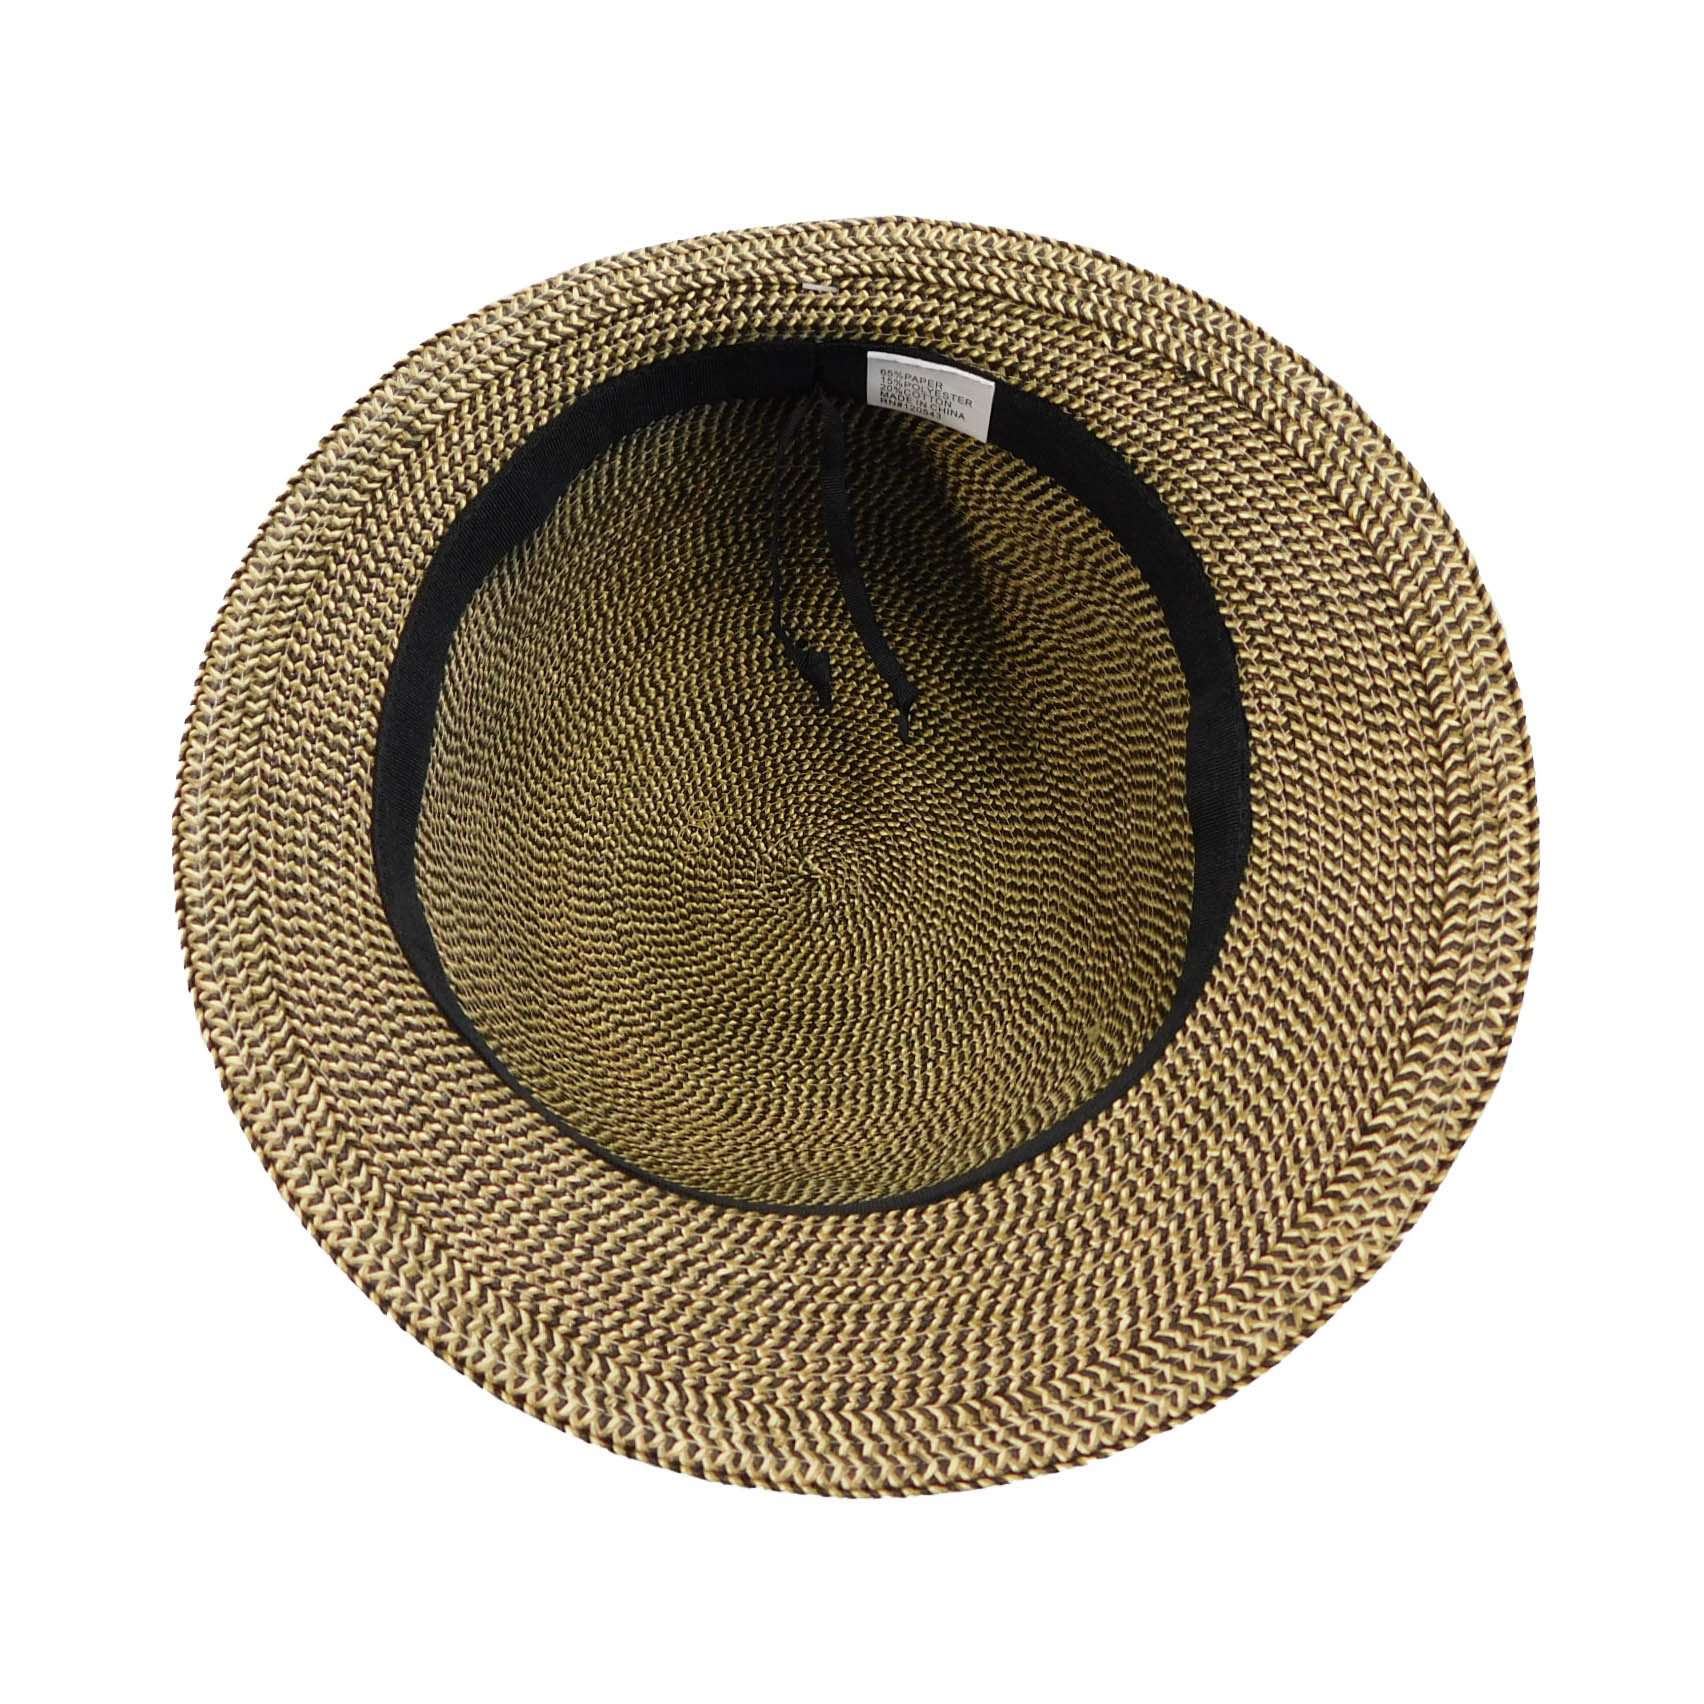 Slanted Brim Summer Cloche by JSA for Women, Cloche - SetarTrading Hats 